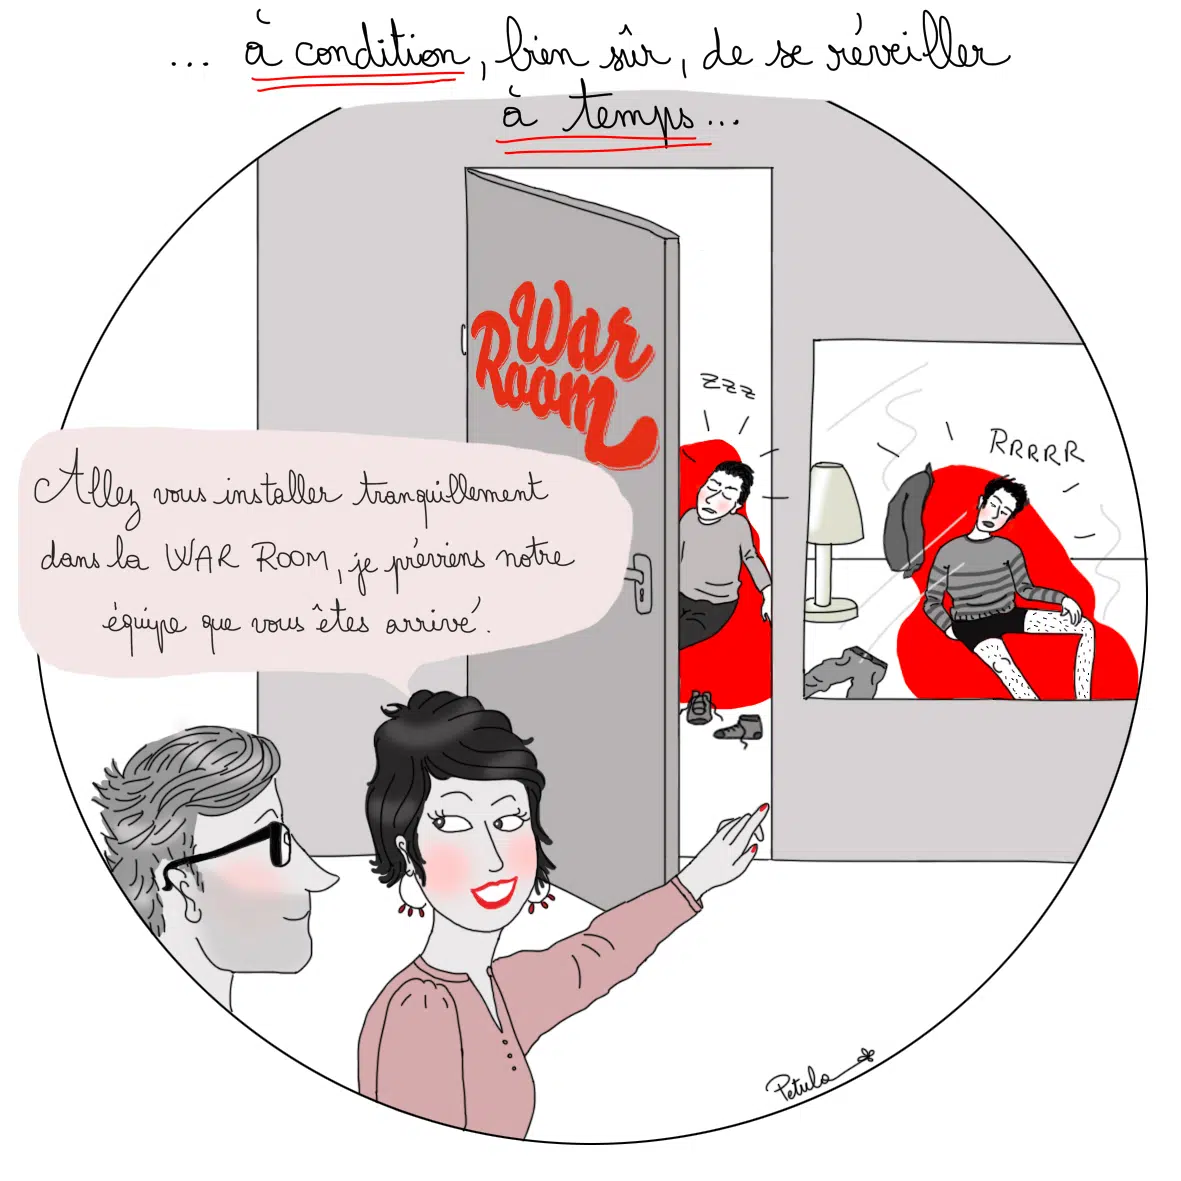 Petula Rocher illustratrice freelance Genève Vaud Suisse illustration histoire bd comics agence Lyon communication Hula Hoop charrette réveil difficile